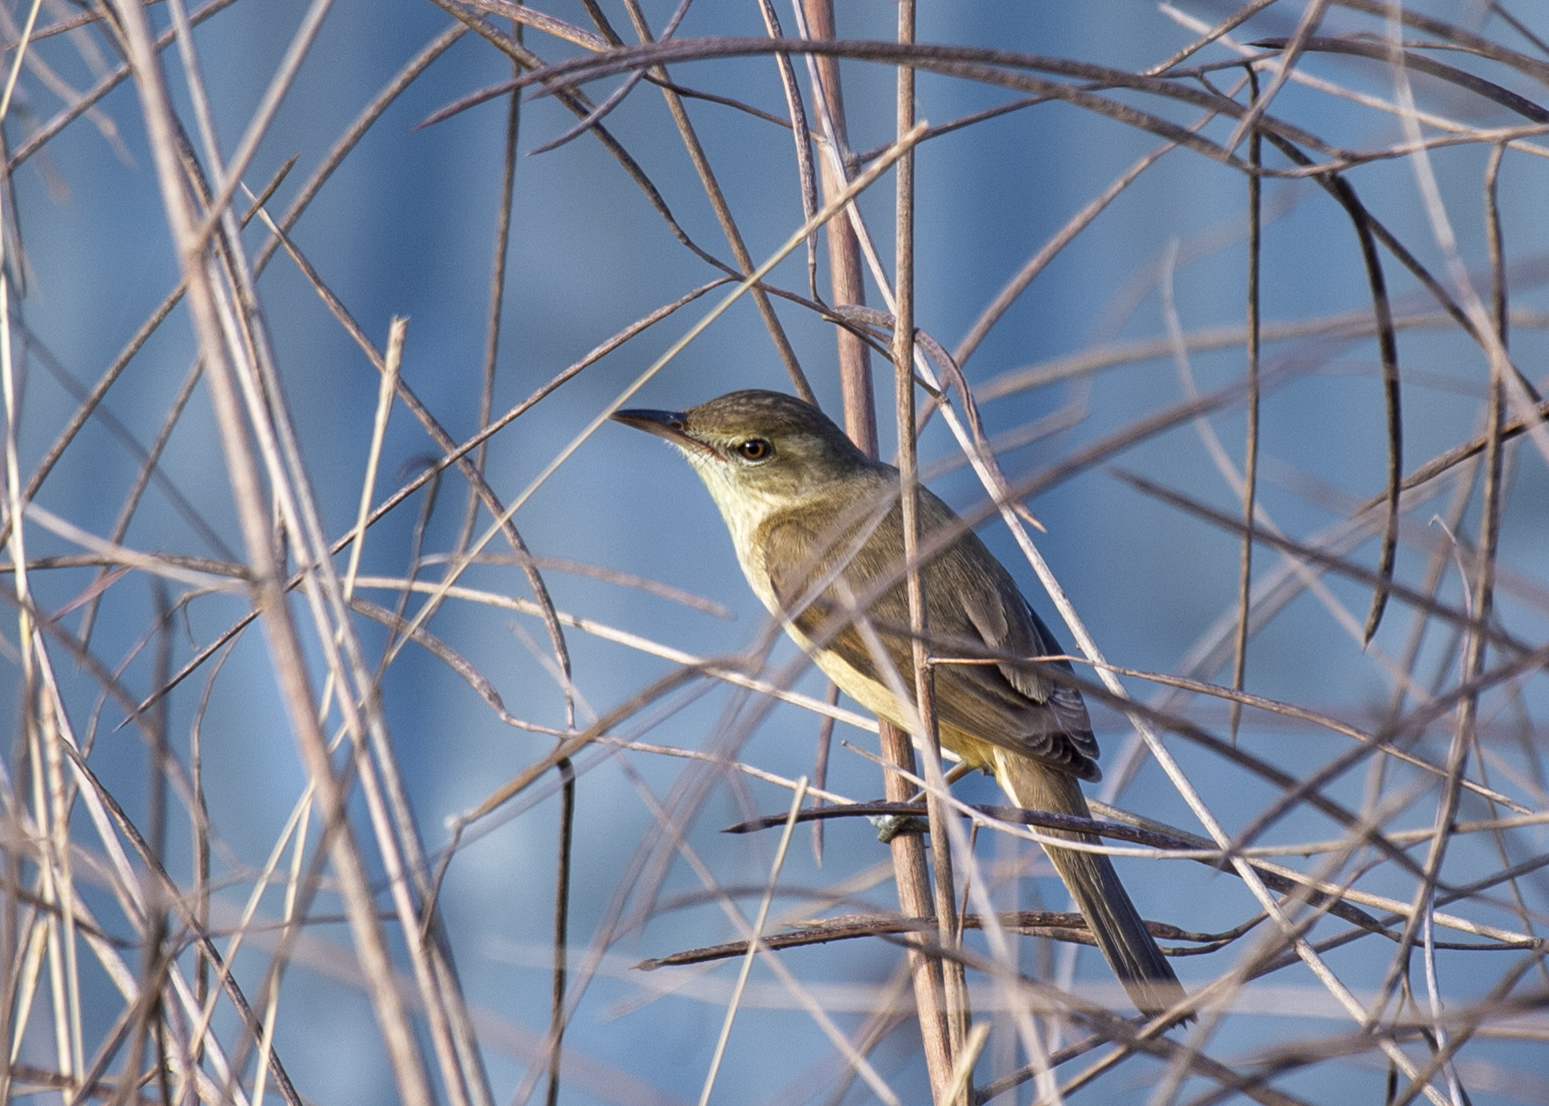 Oriental reed-warbler